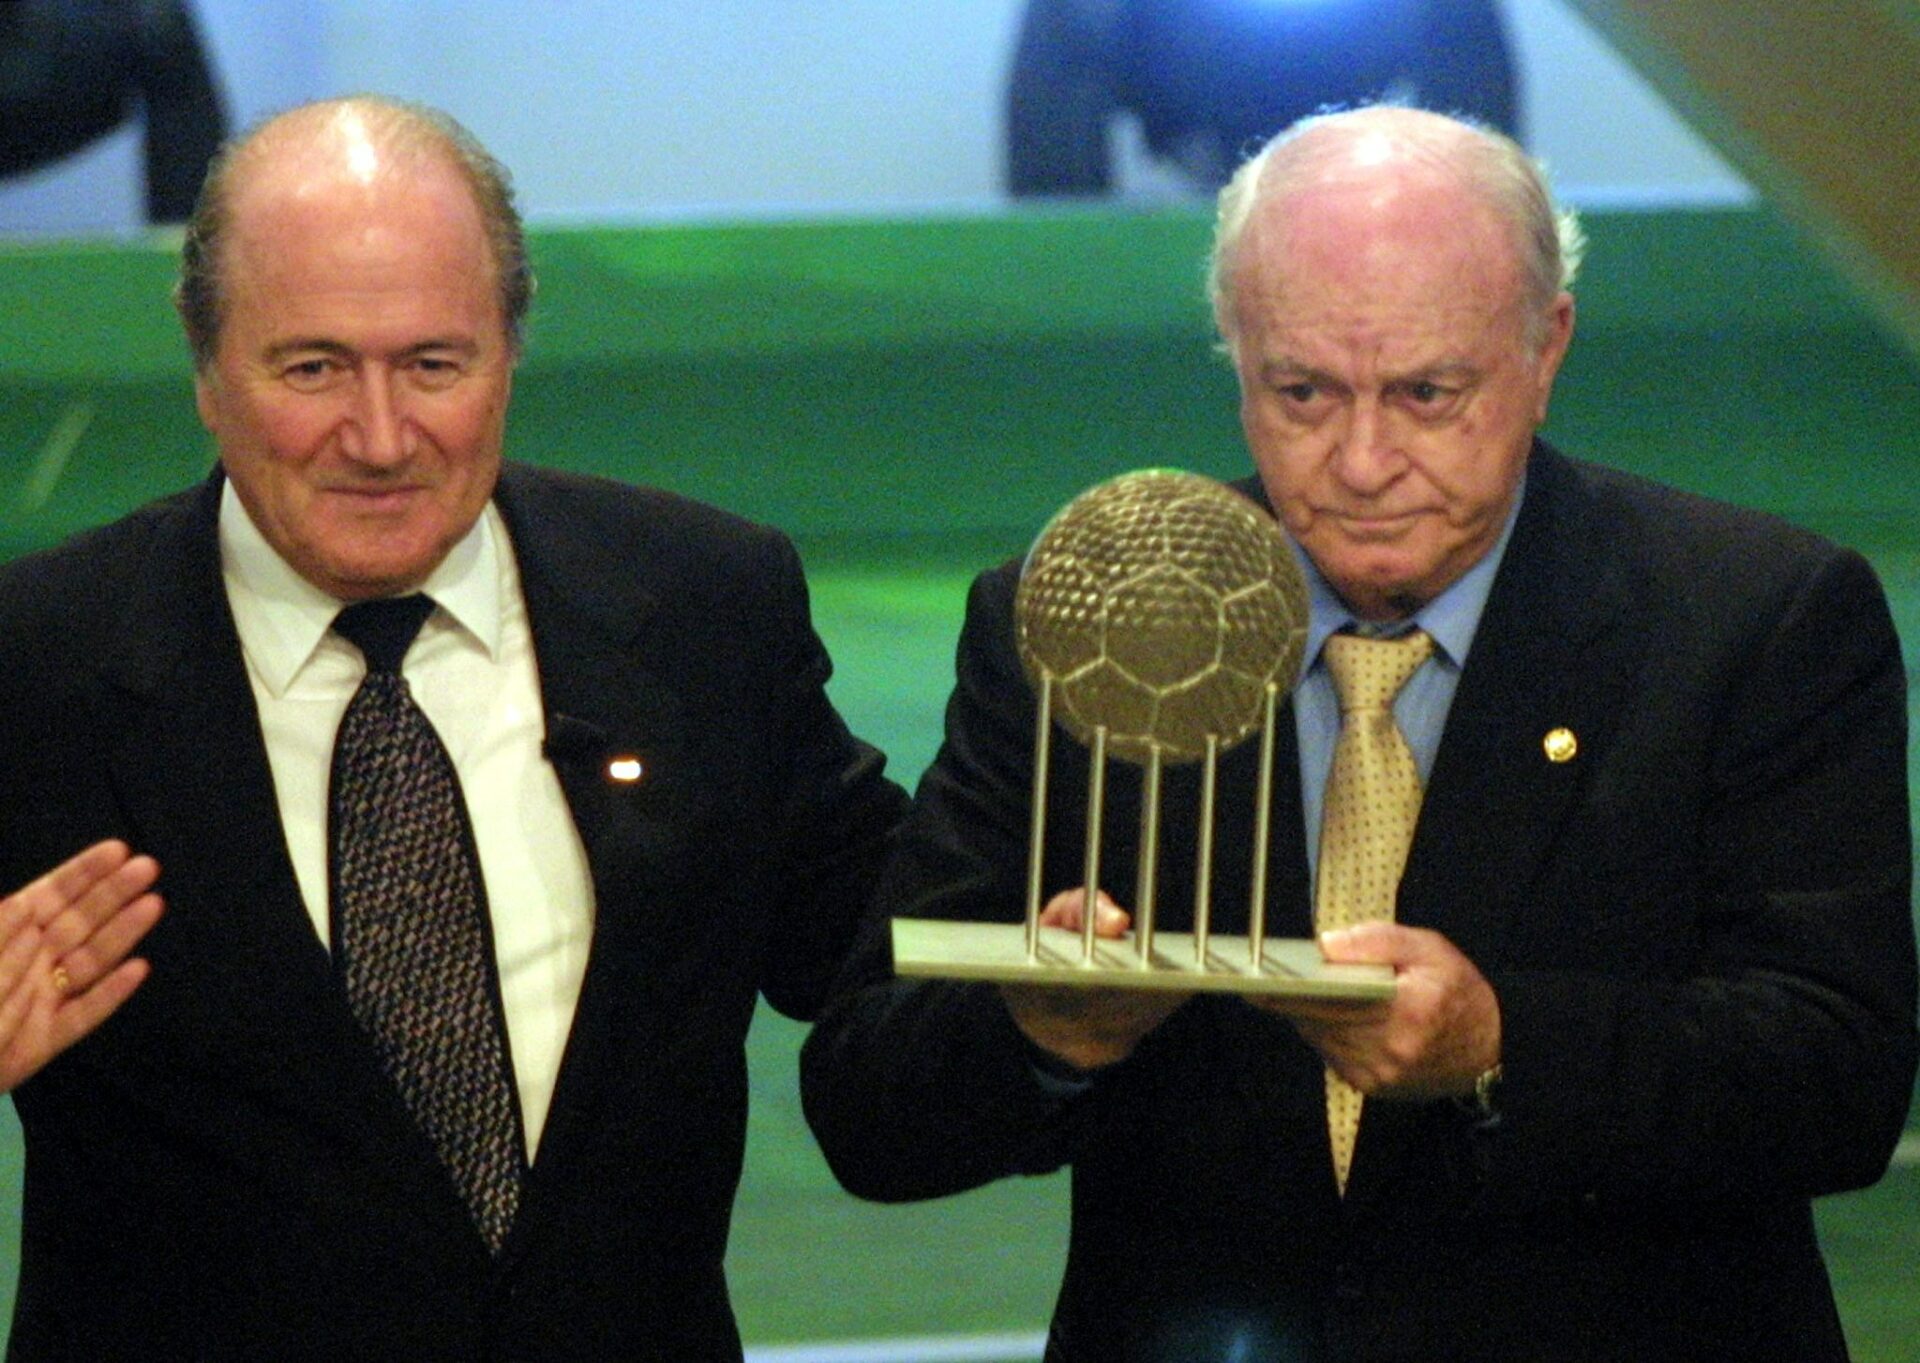 Se cumplen 23 años desde que el Real Madrid fue elegido el Mejor Club del Siglo XX.